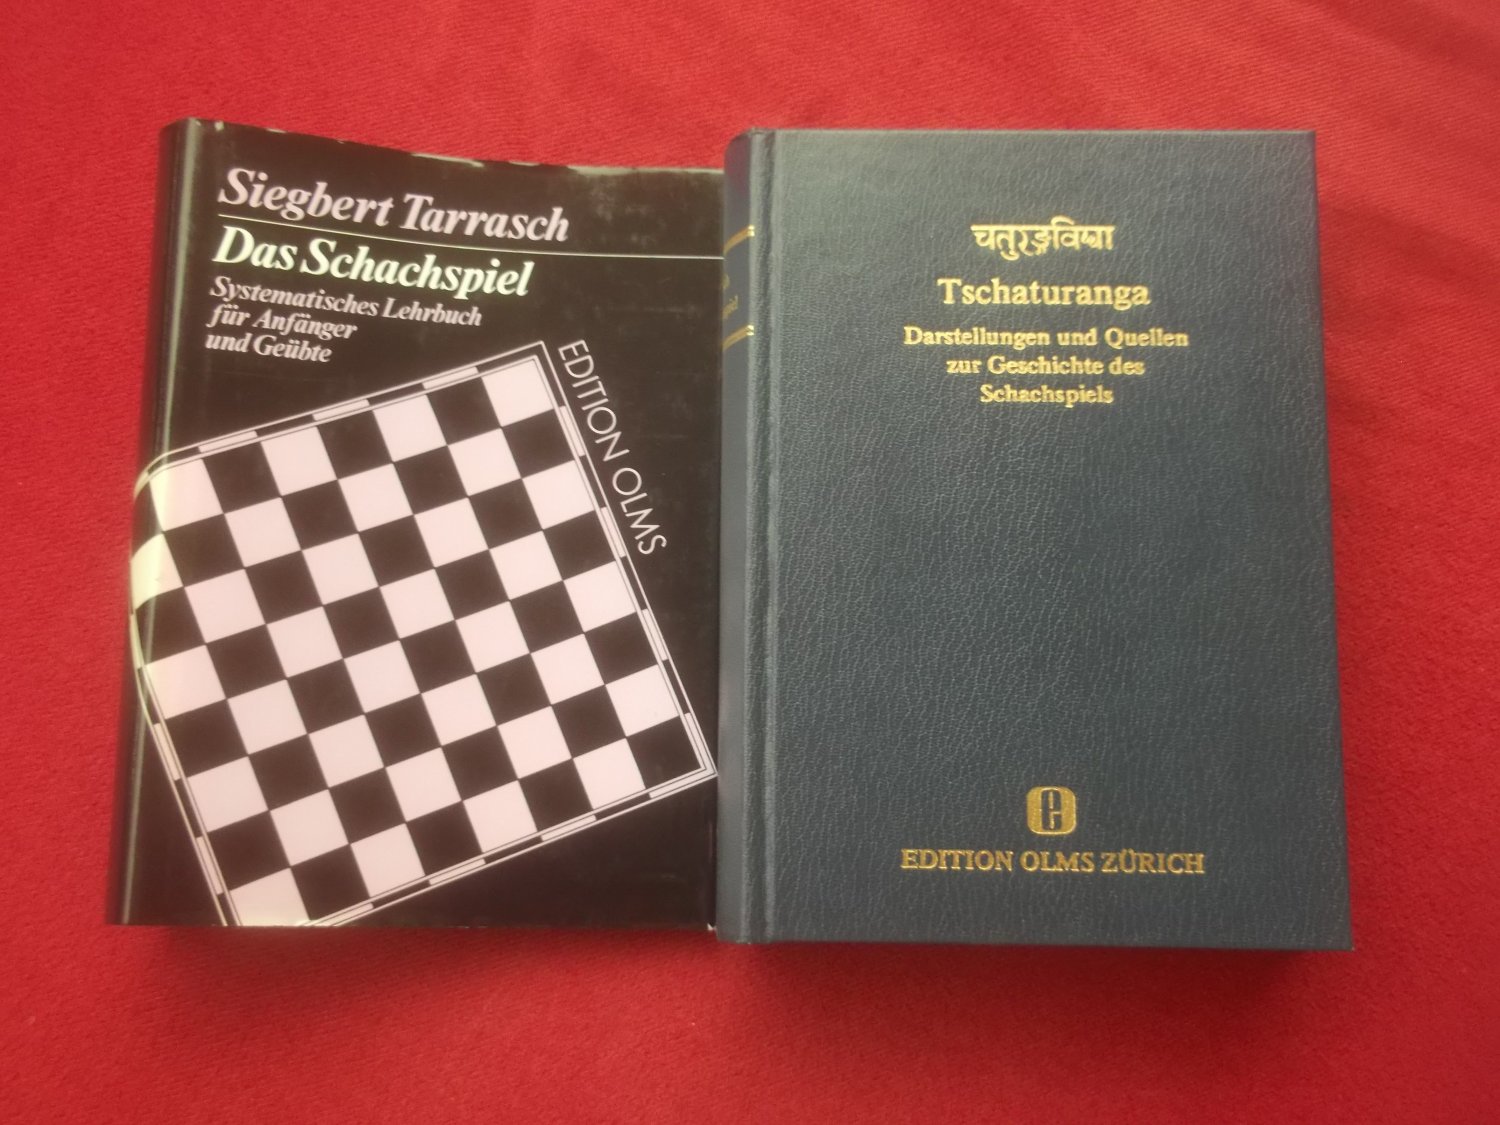 Das Schachspiel SEHR RAR“ (Siegbert Tarrasch) – Buch Erstausgabe kaufen